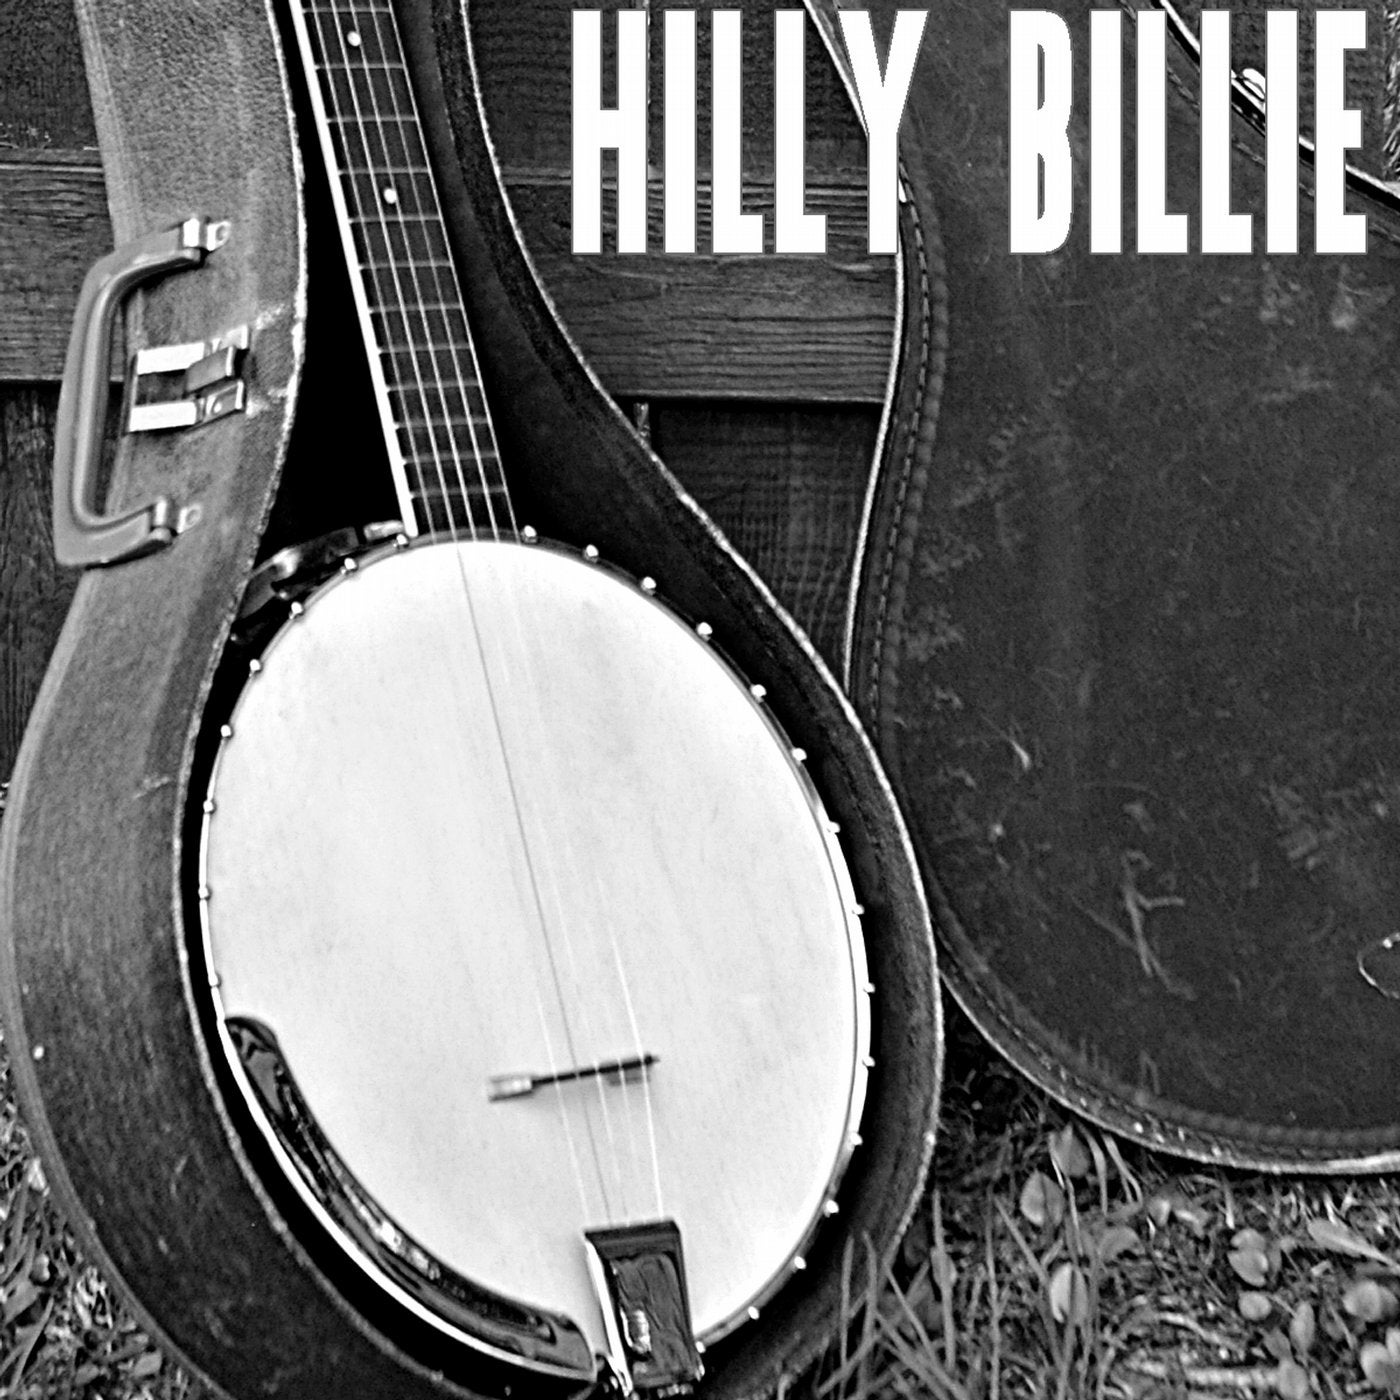 Hilly Billie